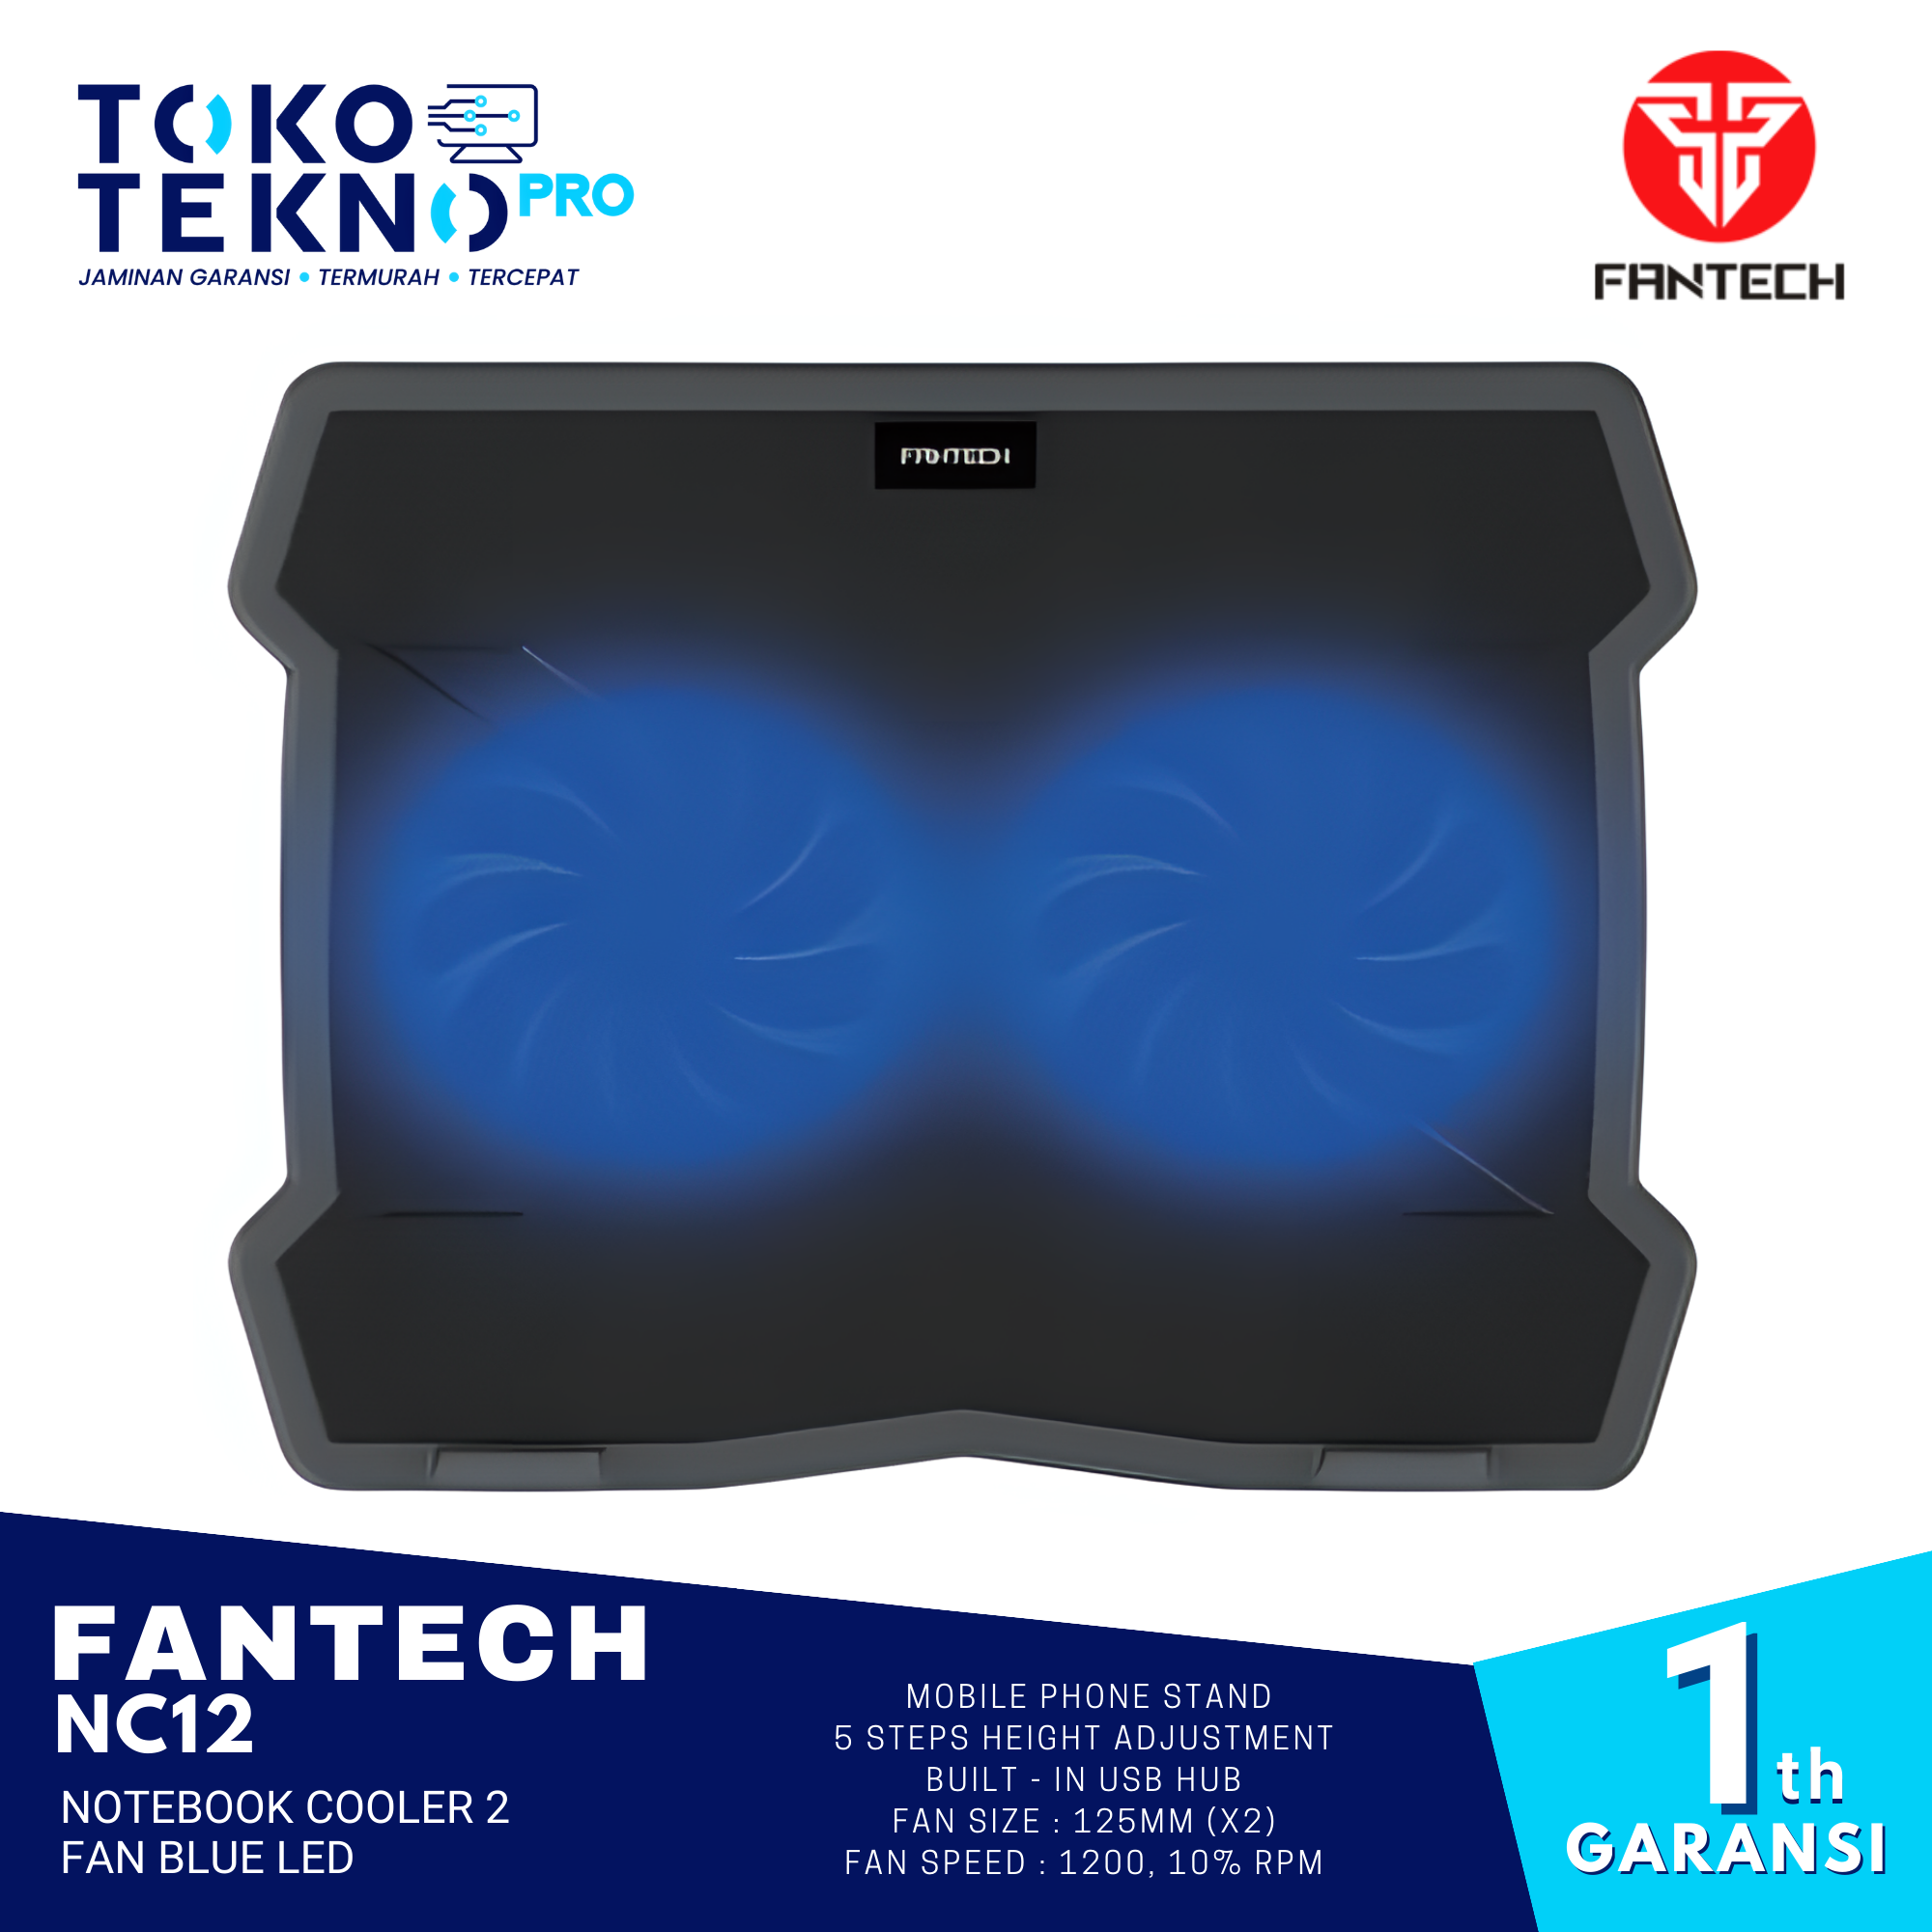 Fantech NC12 Notebook Cooler 2 Fan Blue LED